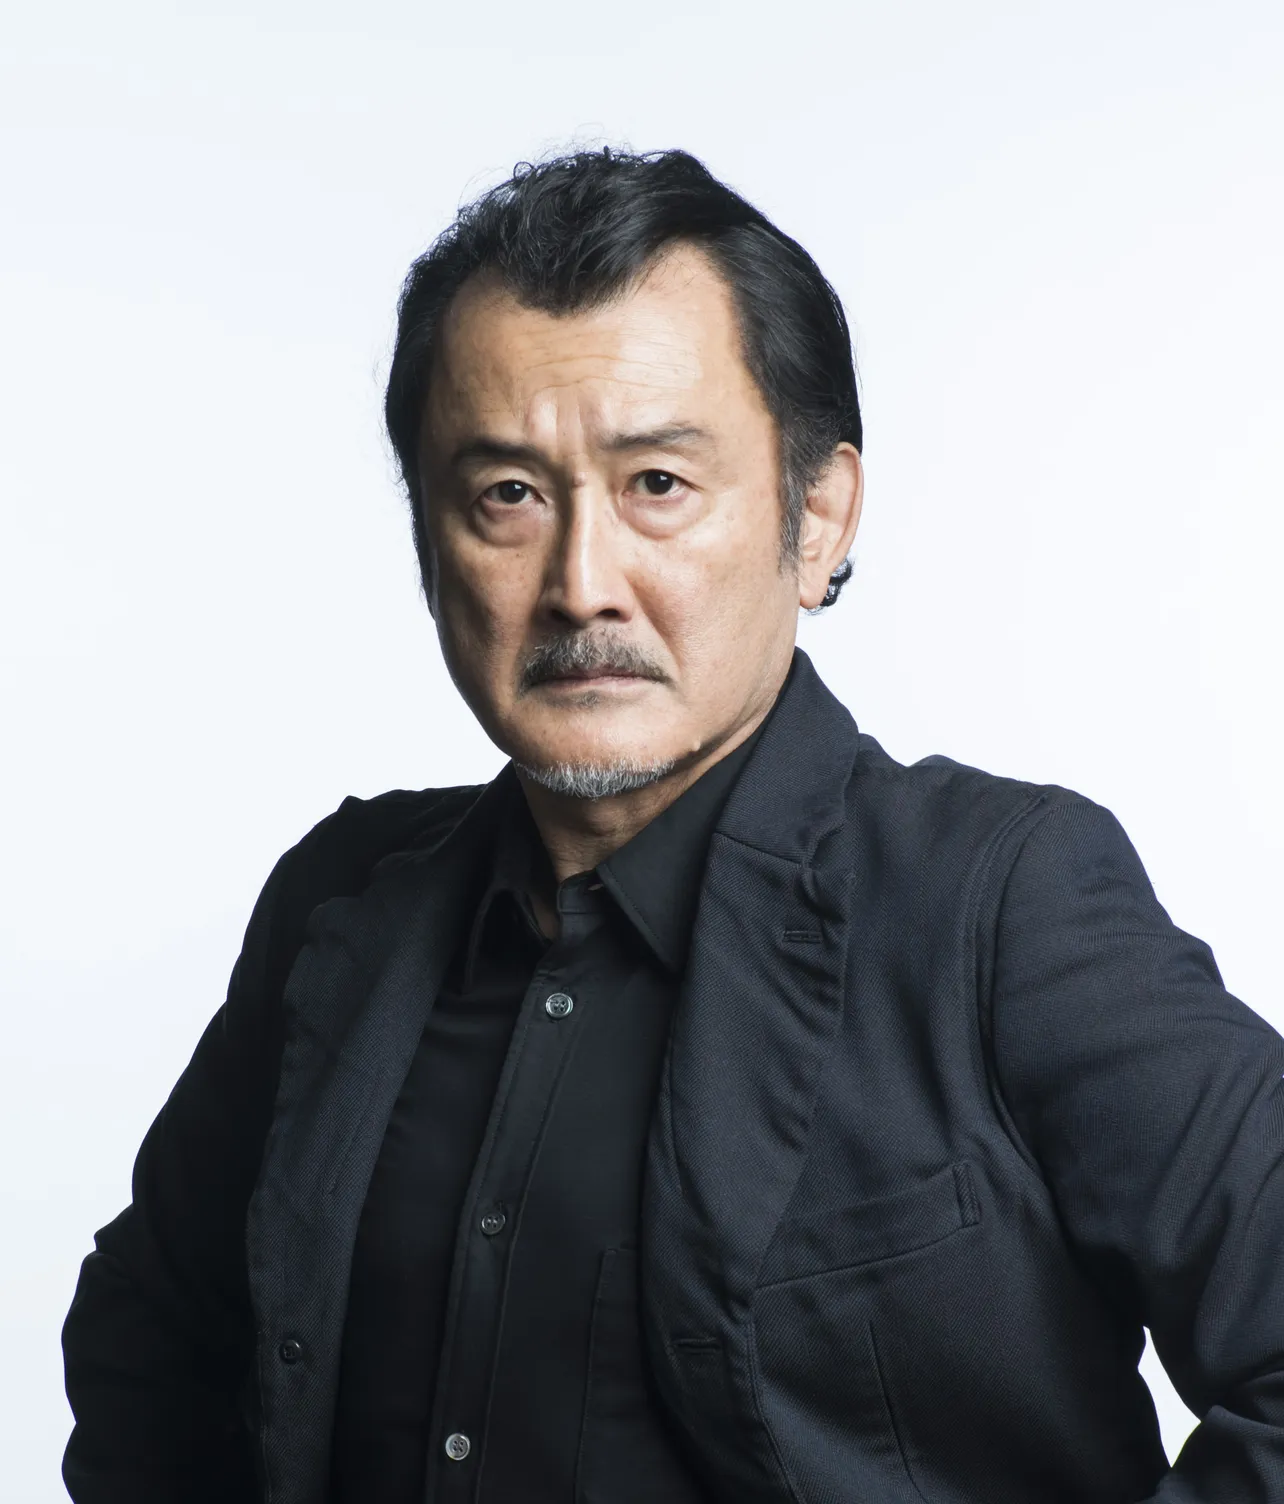 劇場版「ドラえもん」などでも声優を務めた吉田鋼太郎もゲスト声優で出演